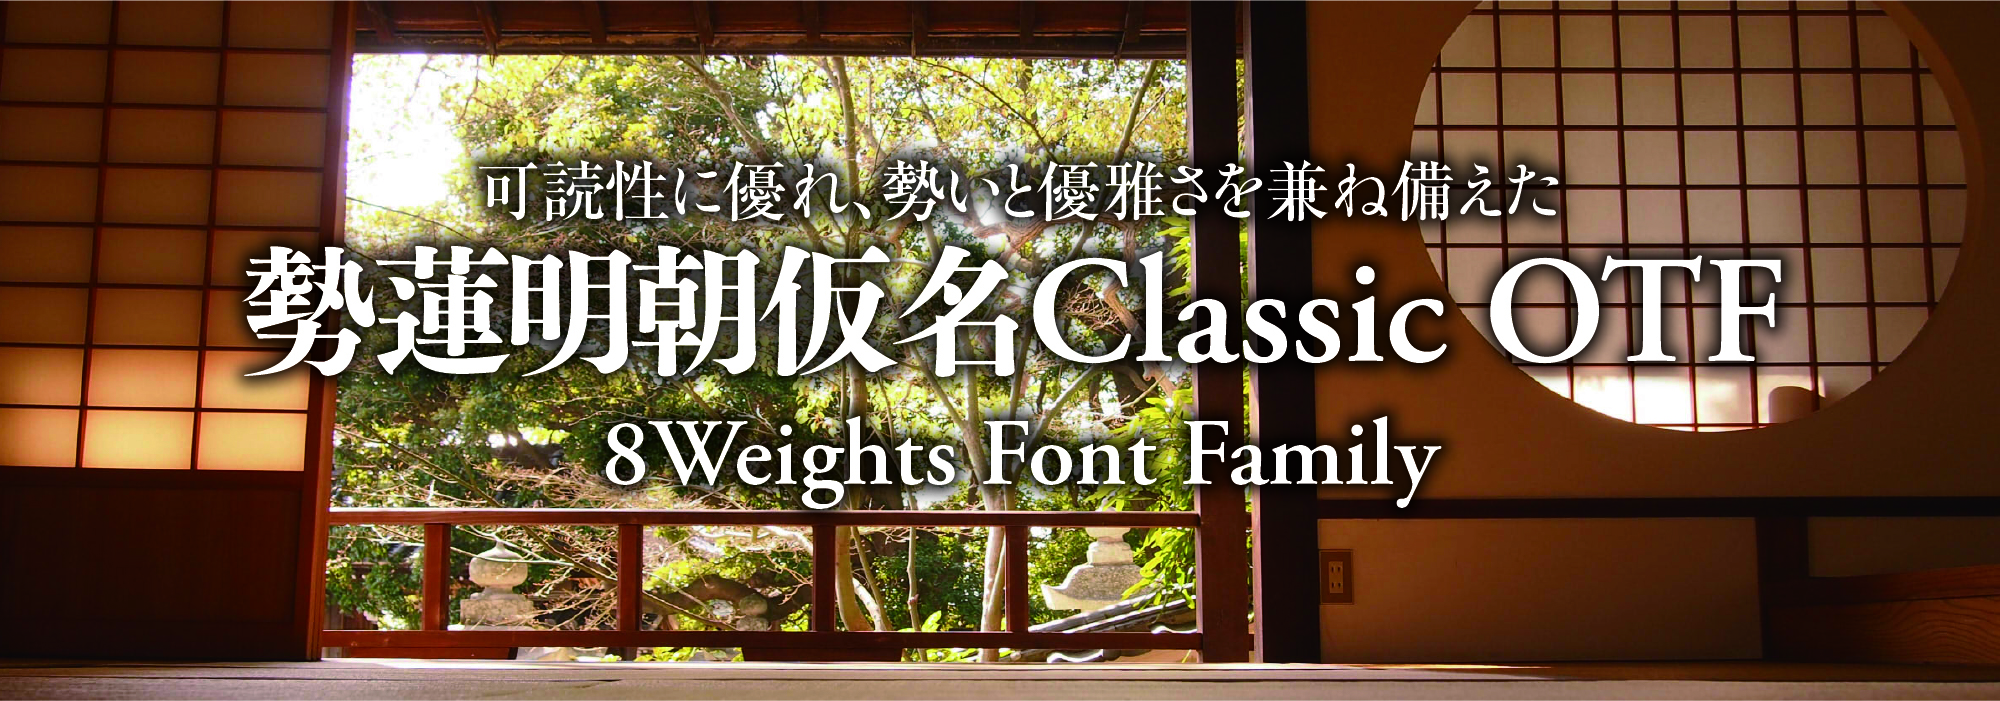 可読性に優れ勢いと優雅さを兼ね備えた 勢蓮明朝仮名Classic 8 Weights Font Family